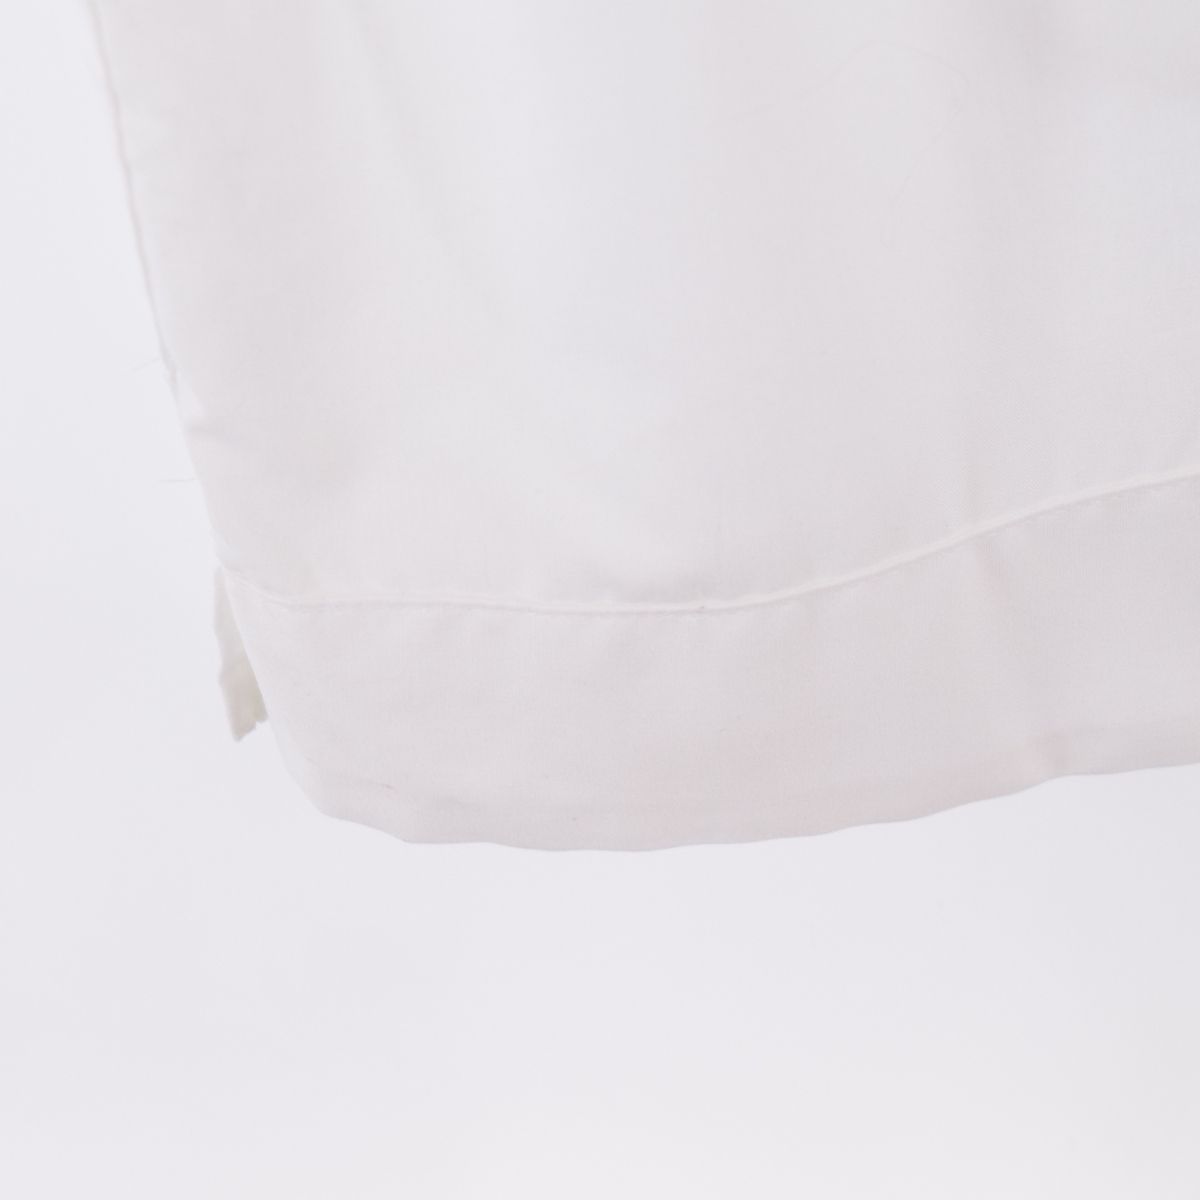 The Havanera Shirt Co. 半袖 オープンカラー メキシカンシャツ キューバシャツ メンズXXL /eaa336386